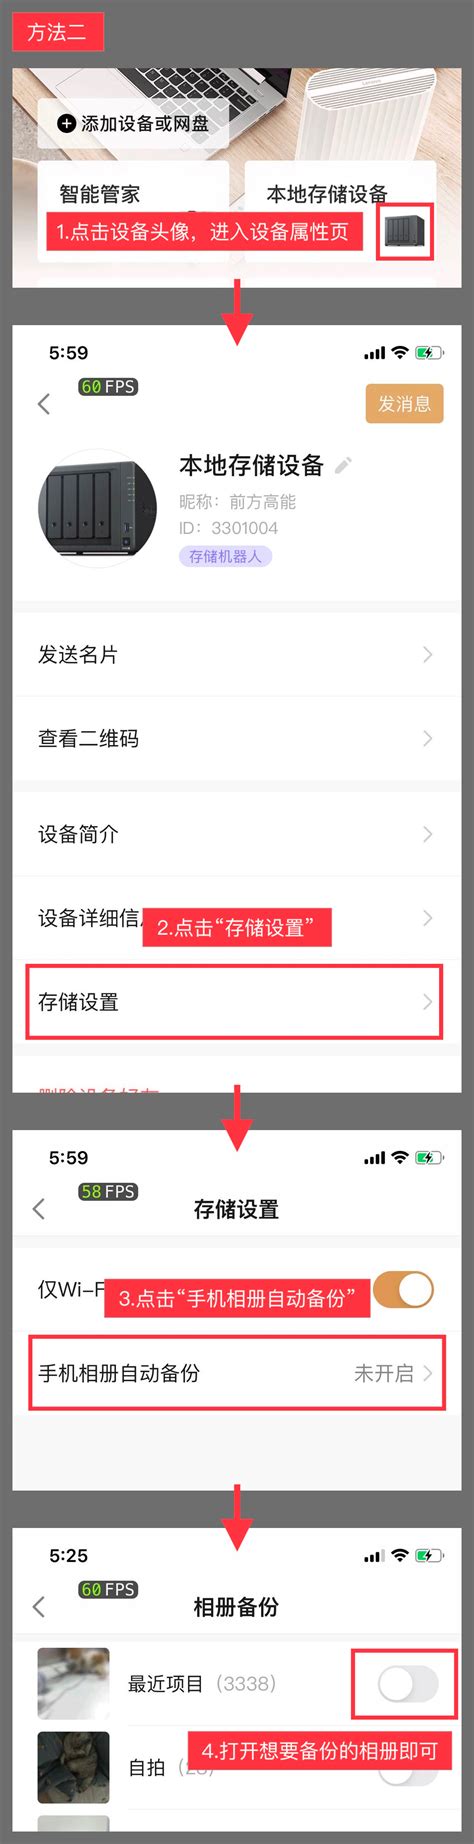 手机自动备份软件哪个好用 手机自动备份软件到PC-iMazing中文网站